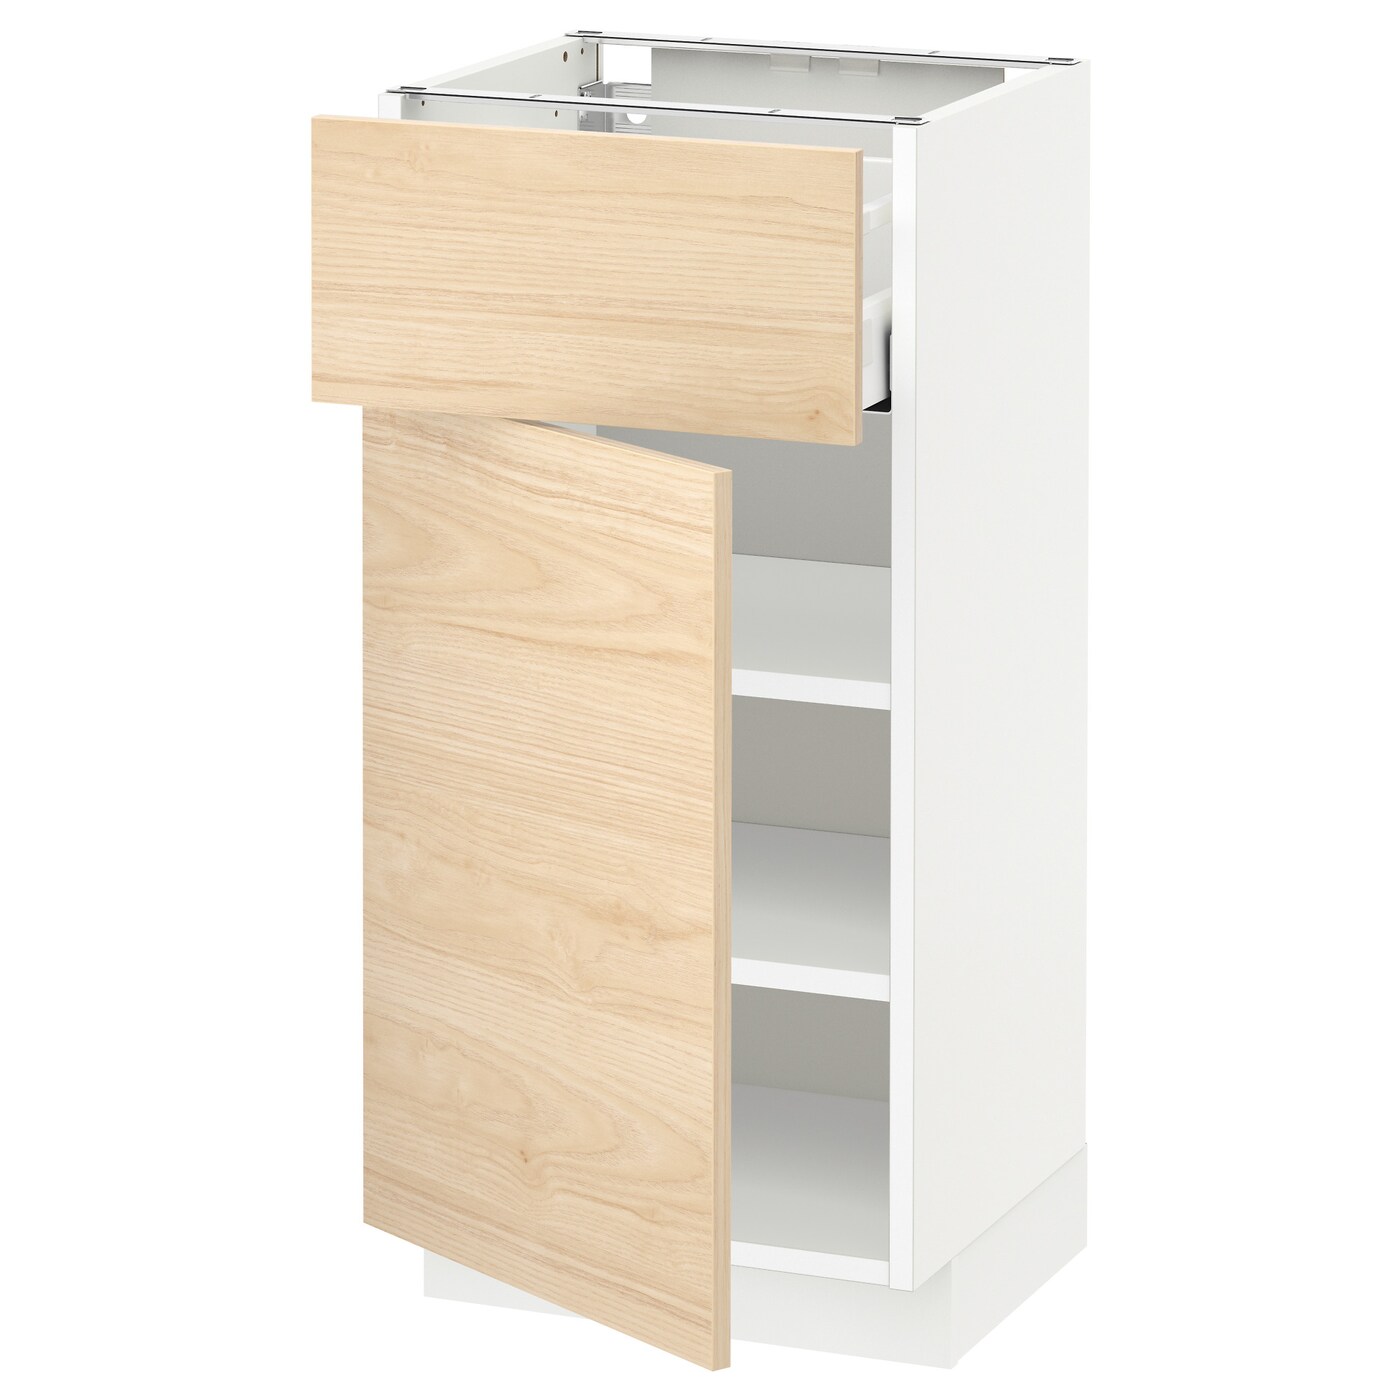 Напольный шкаф - METOD / MAXIMERA IKEA/ МЕТОД/ МАКСИМЕРА ИКЕА,  88х40 см, белый/под беленый дуб